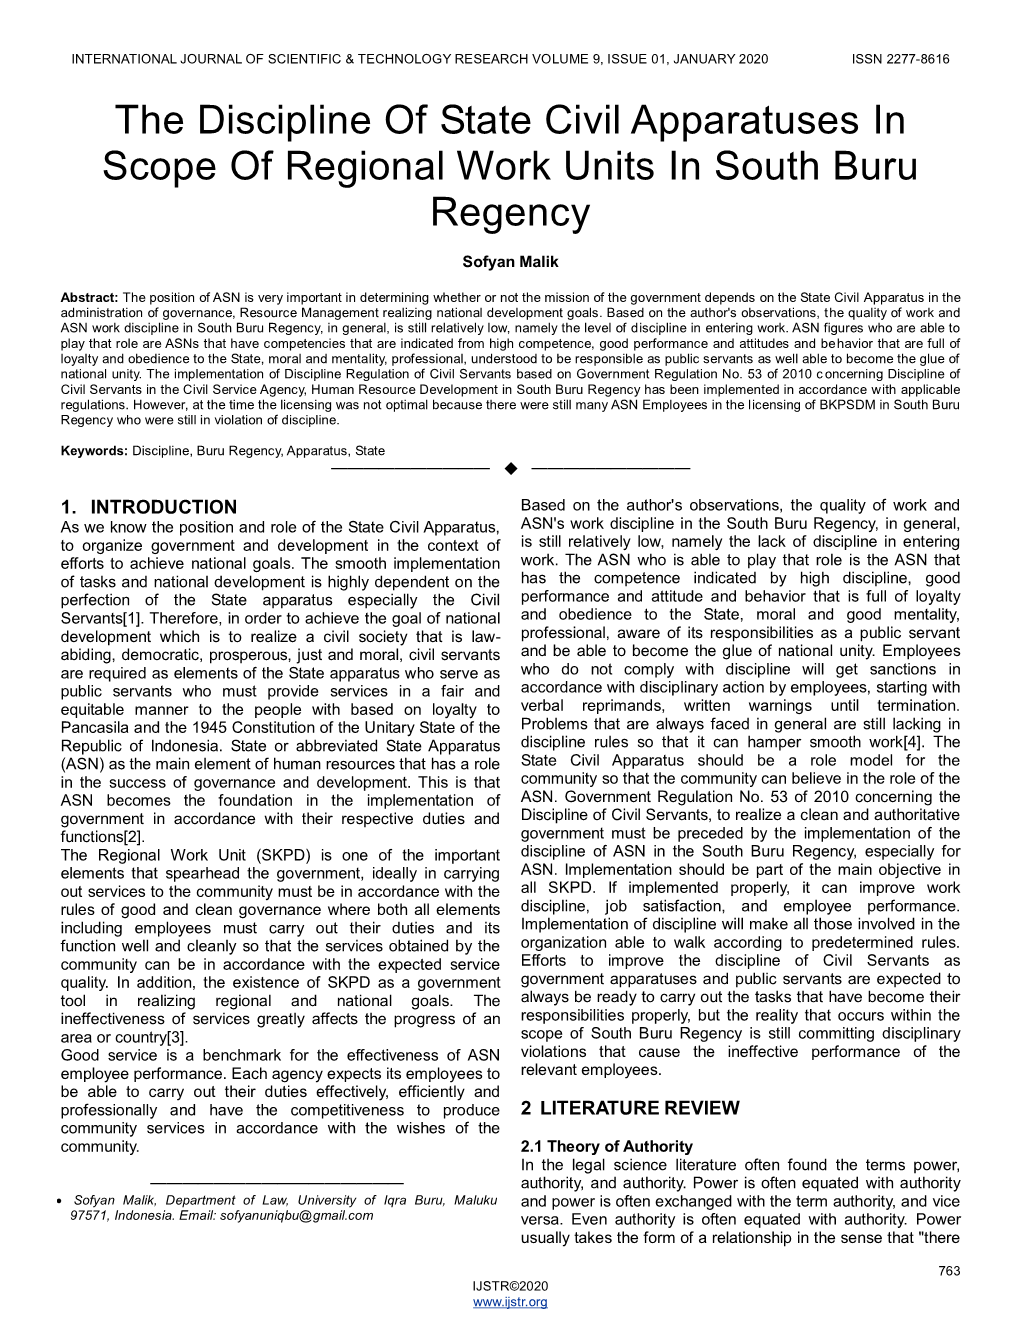 The Discipline of State Civil Apparatuses in Scope of Regional Work Units in South Buru Regency